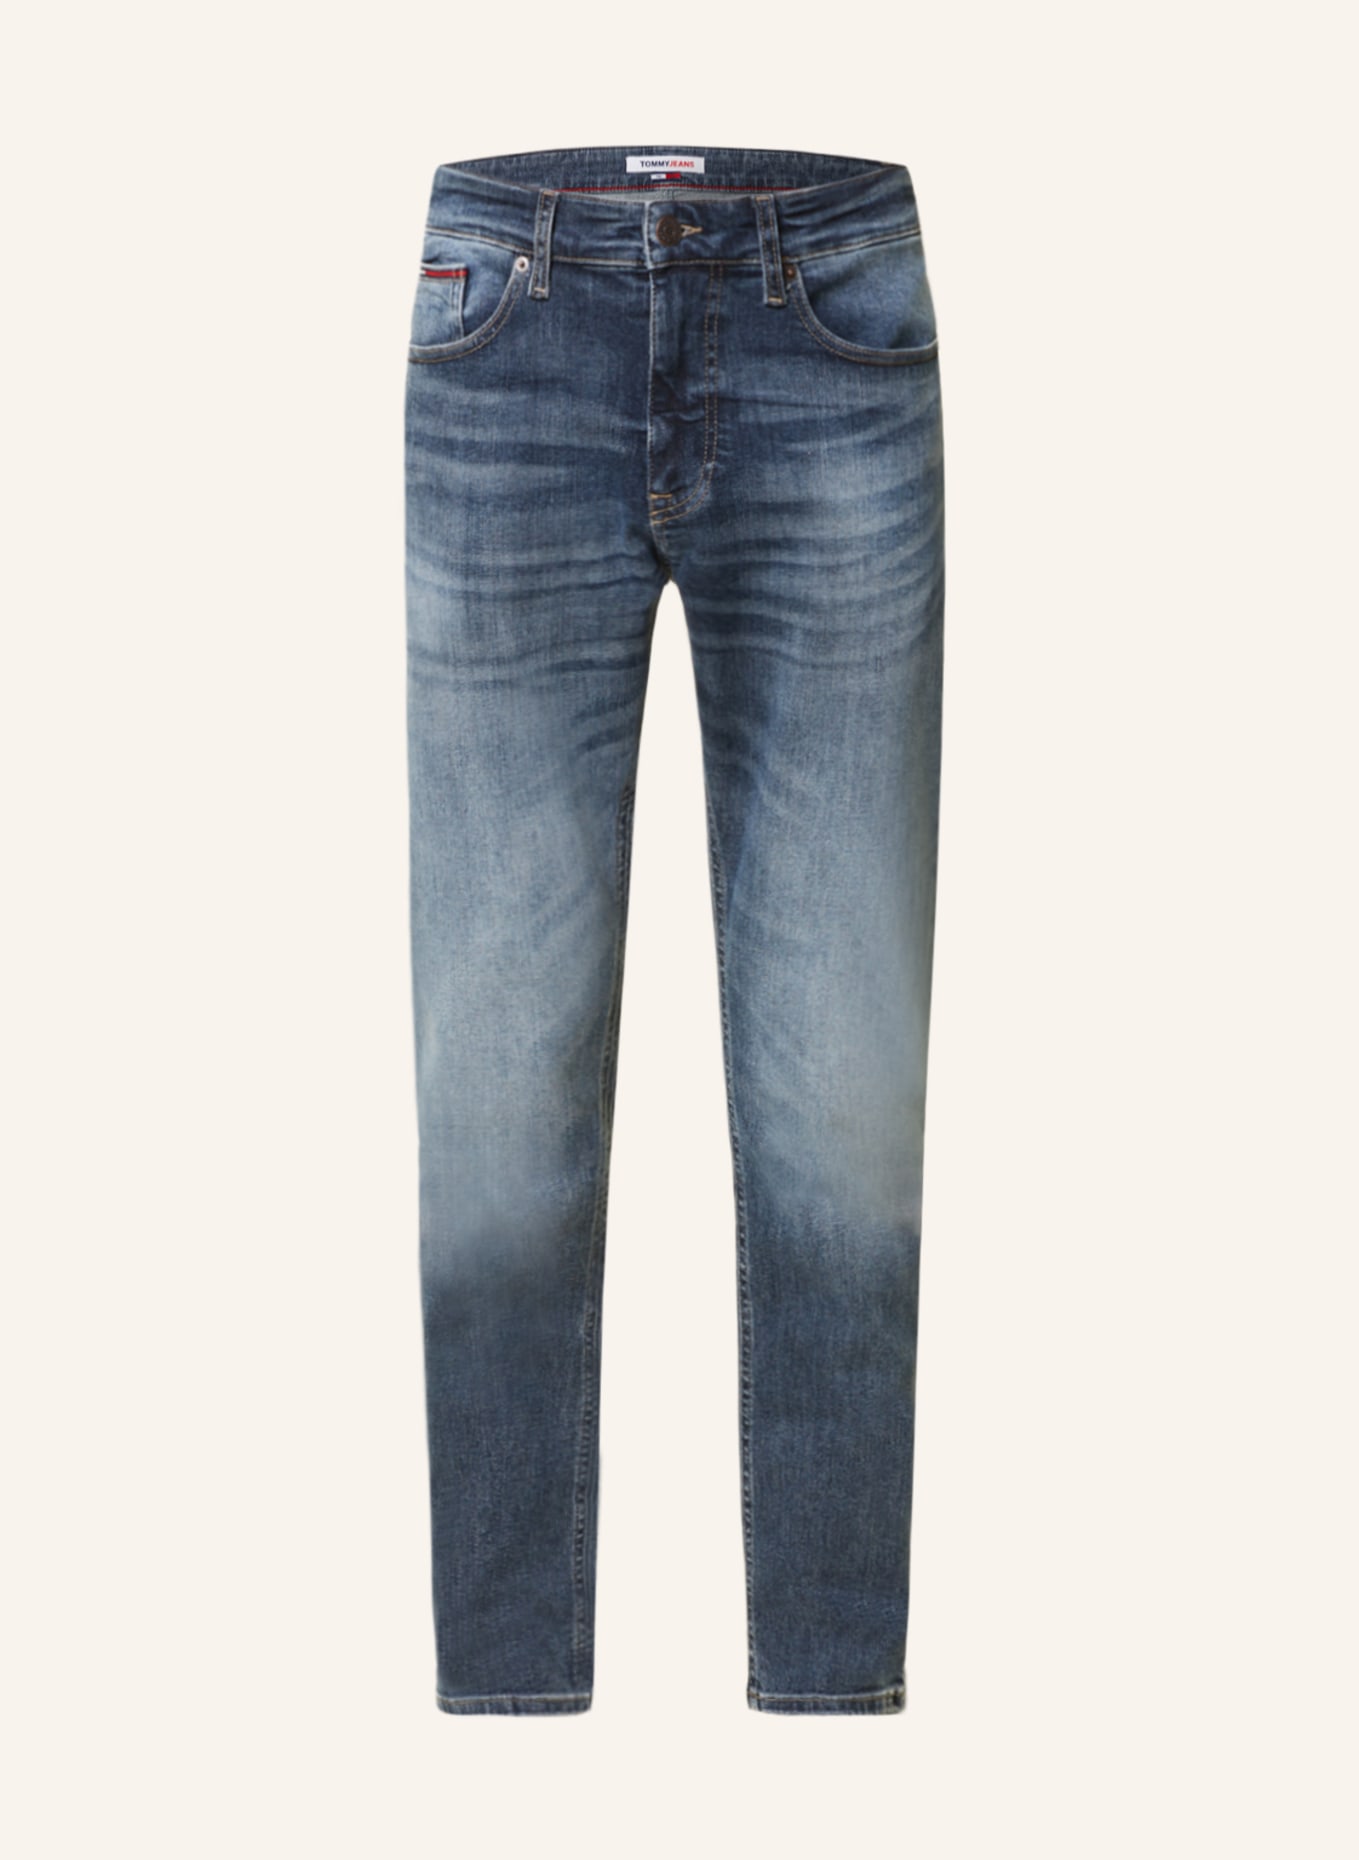 TOMMY JEANS Jeans AUSTIN tapered fit, Color: 1BK Denim Dark (Image 1)